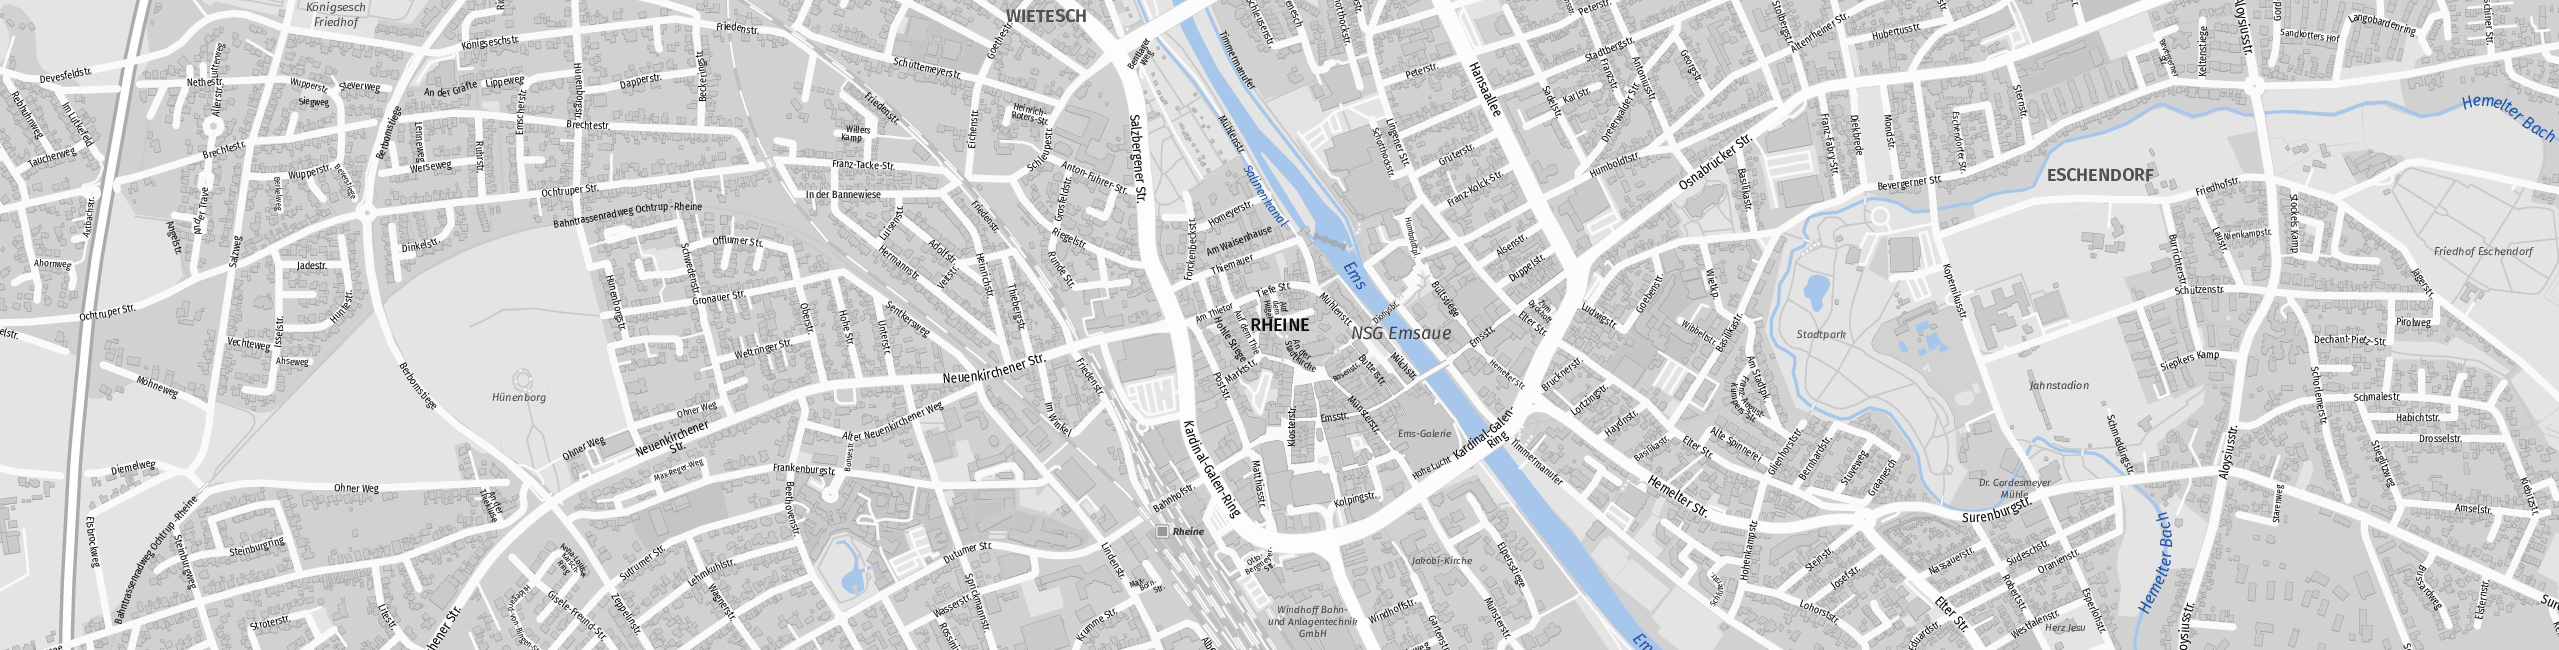 Stadtplan Rheine zum Downloaden.